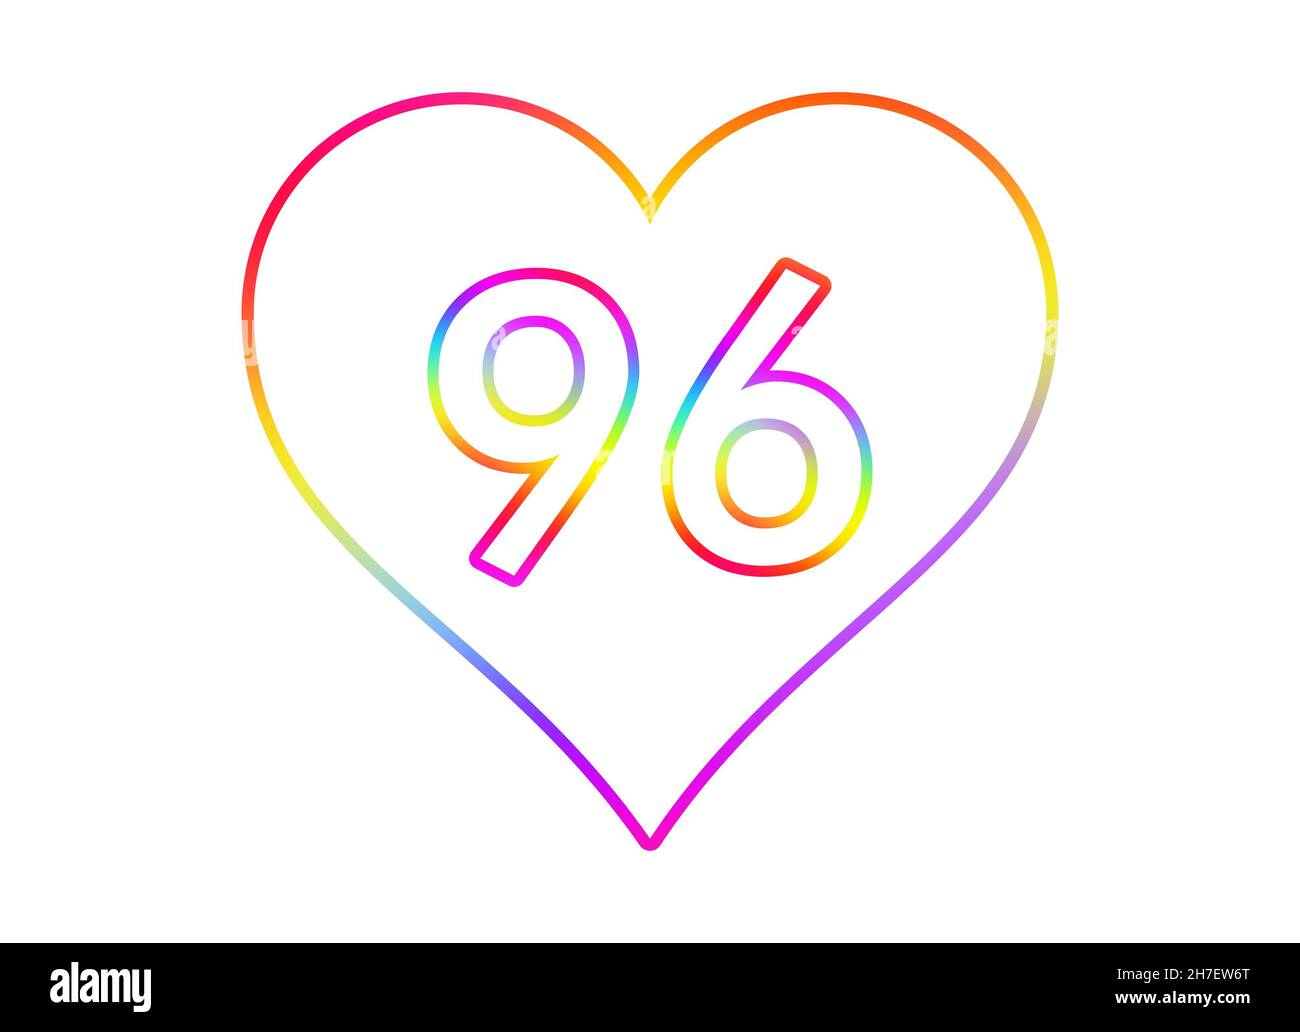 Nummer 96 in ein weißes Herz mit Regenbogenfarben umrandet. Stockfoto